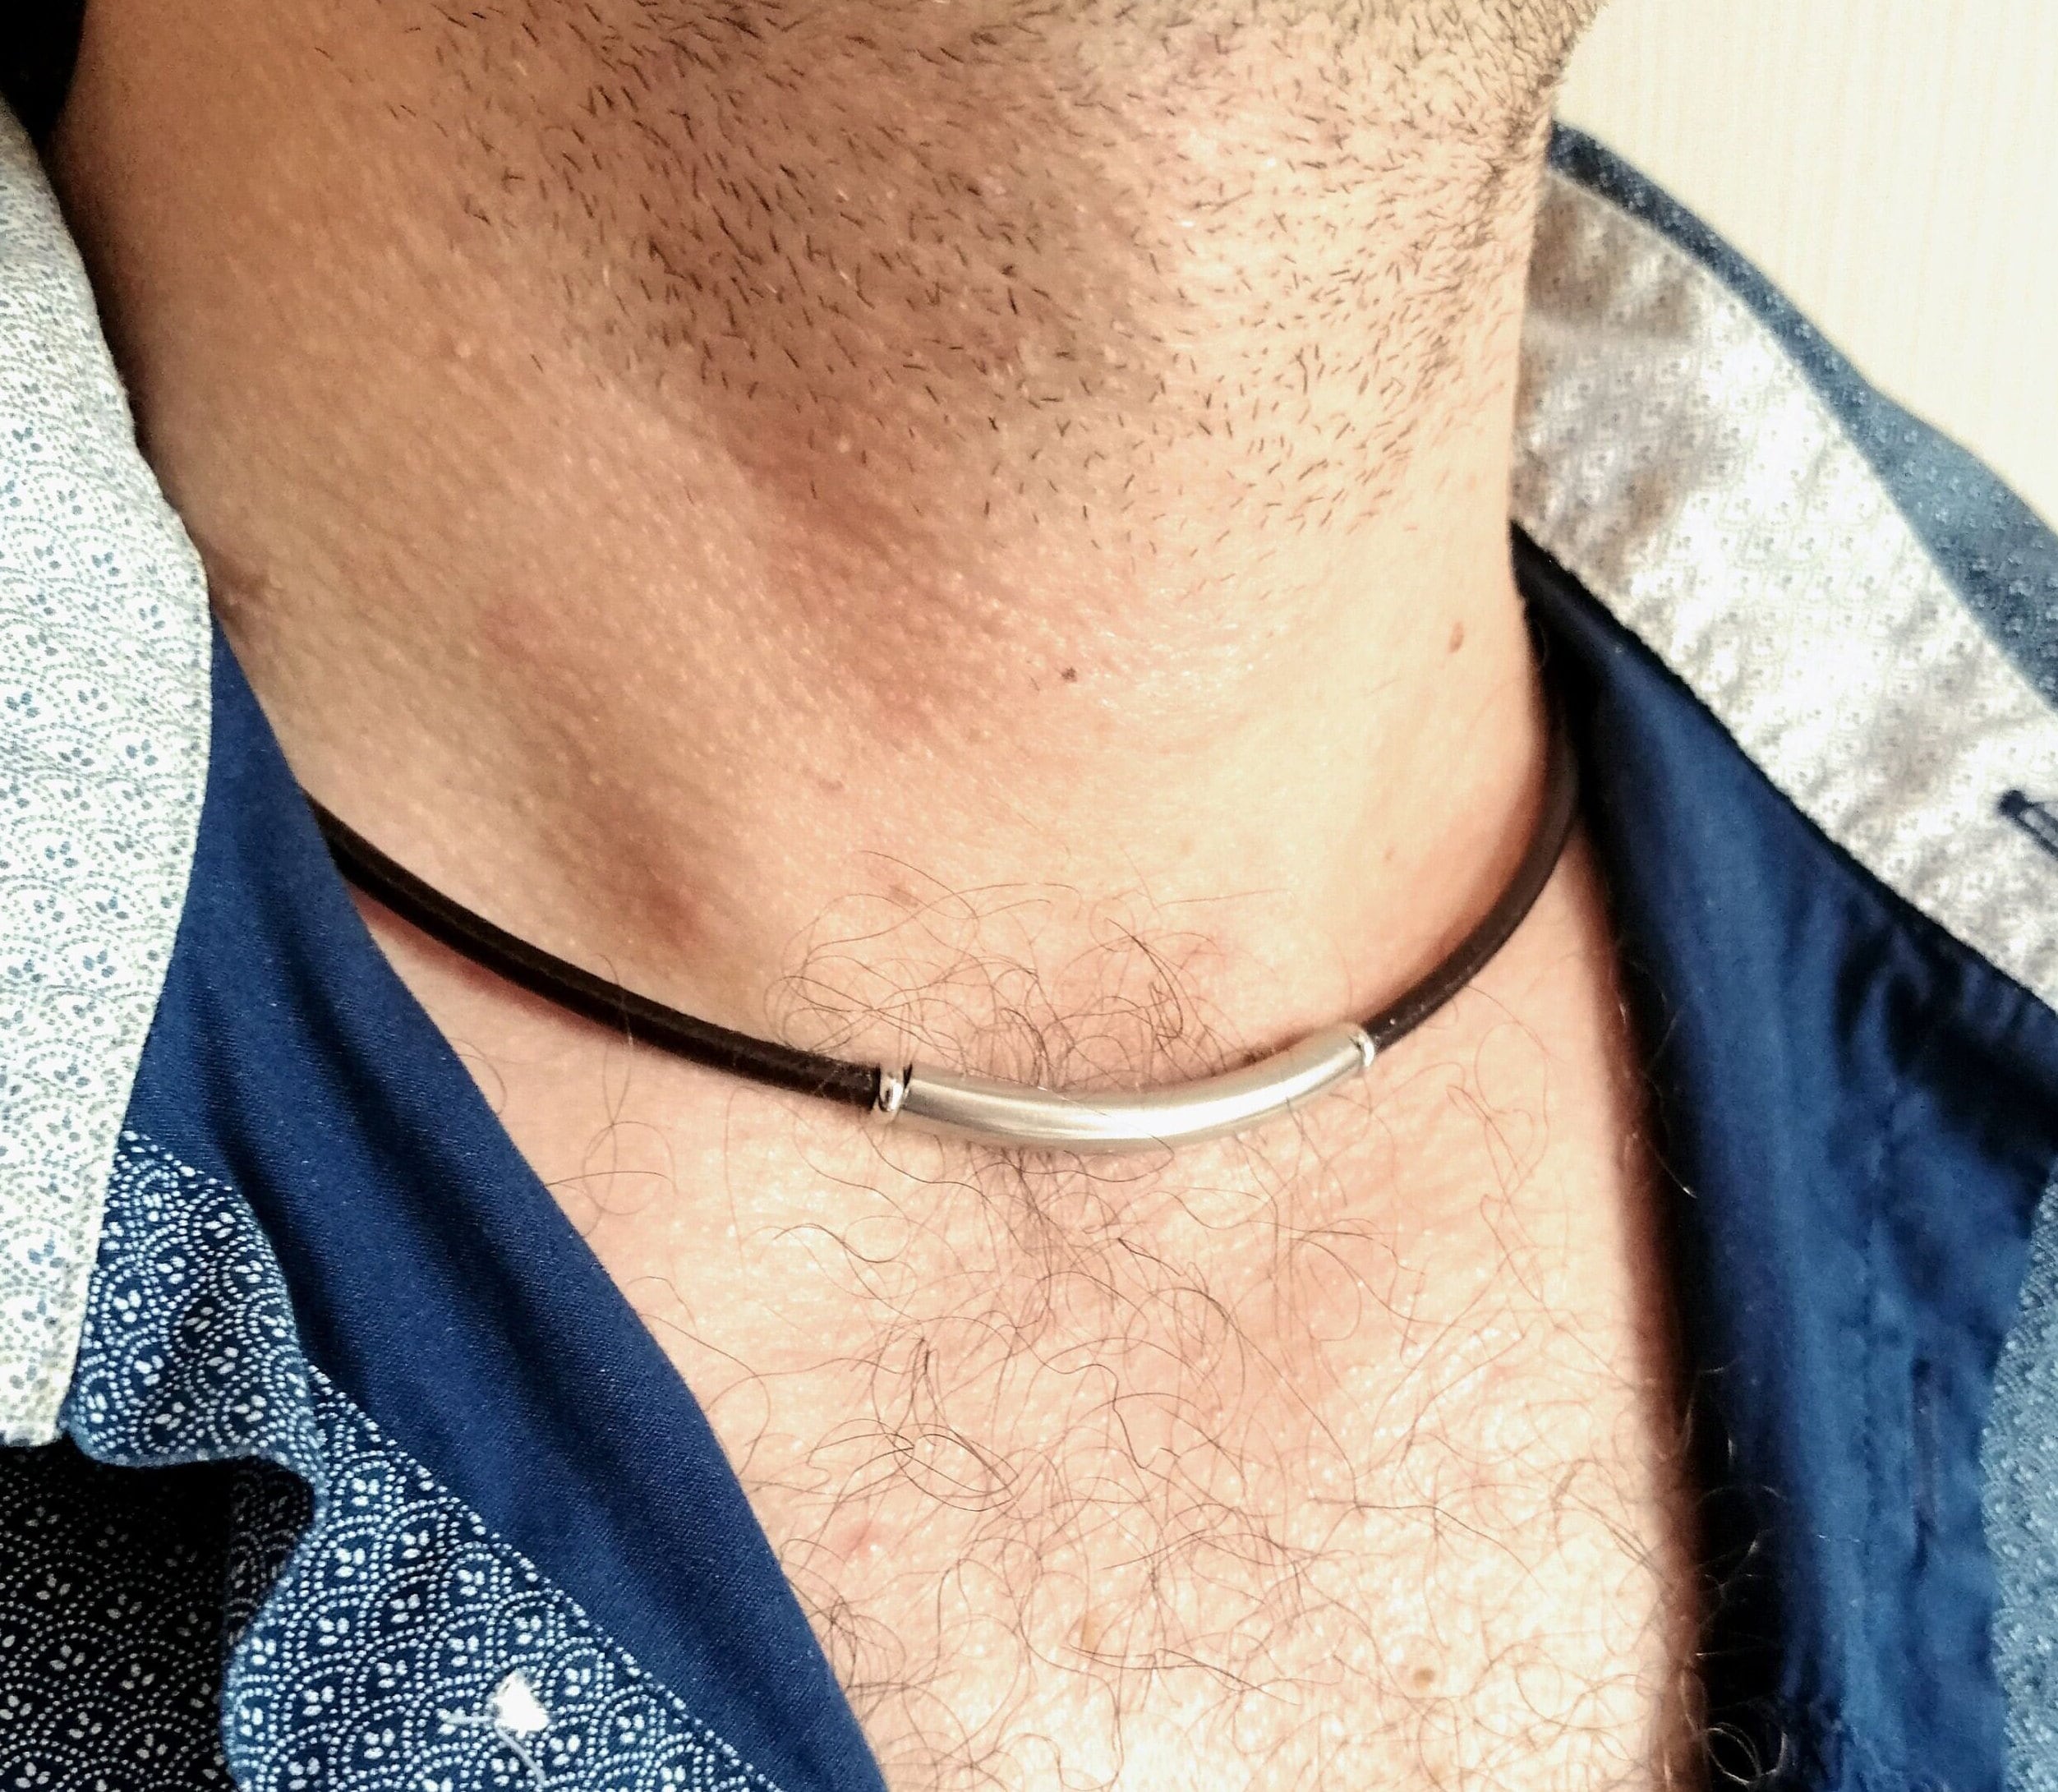 Men's Necklace - Men's Choker Necklace - Men's Leather Necklace - Men's  Jewelry - Men's Gift